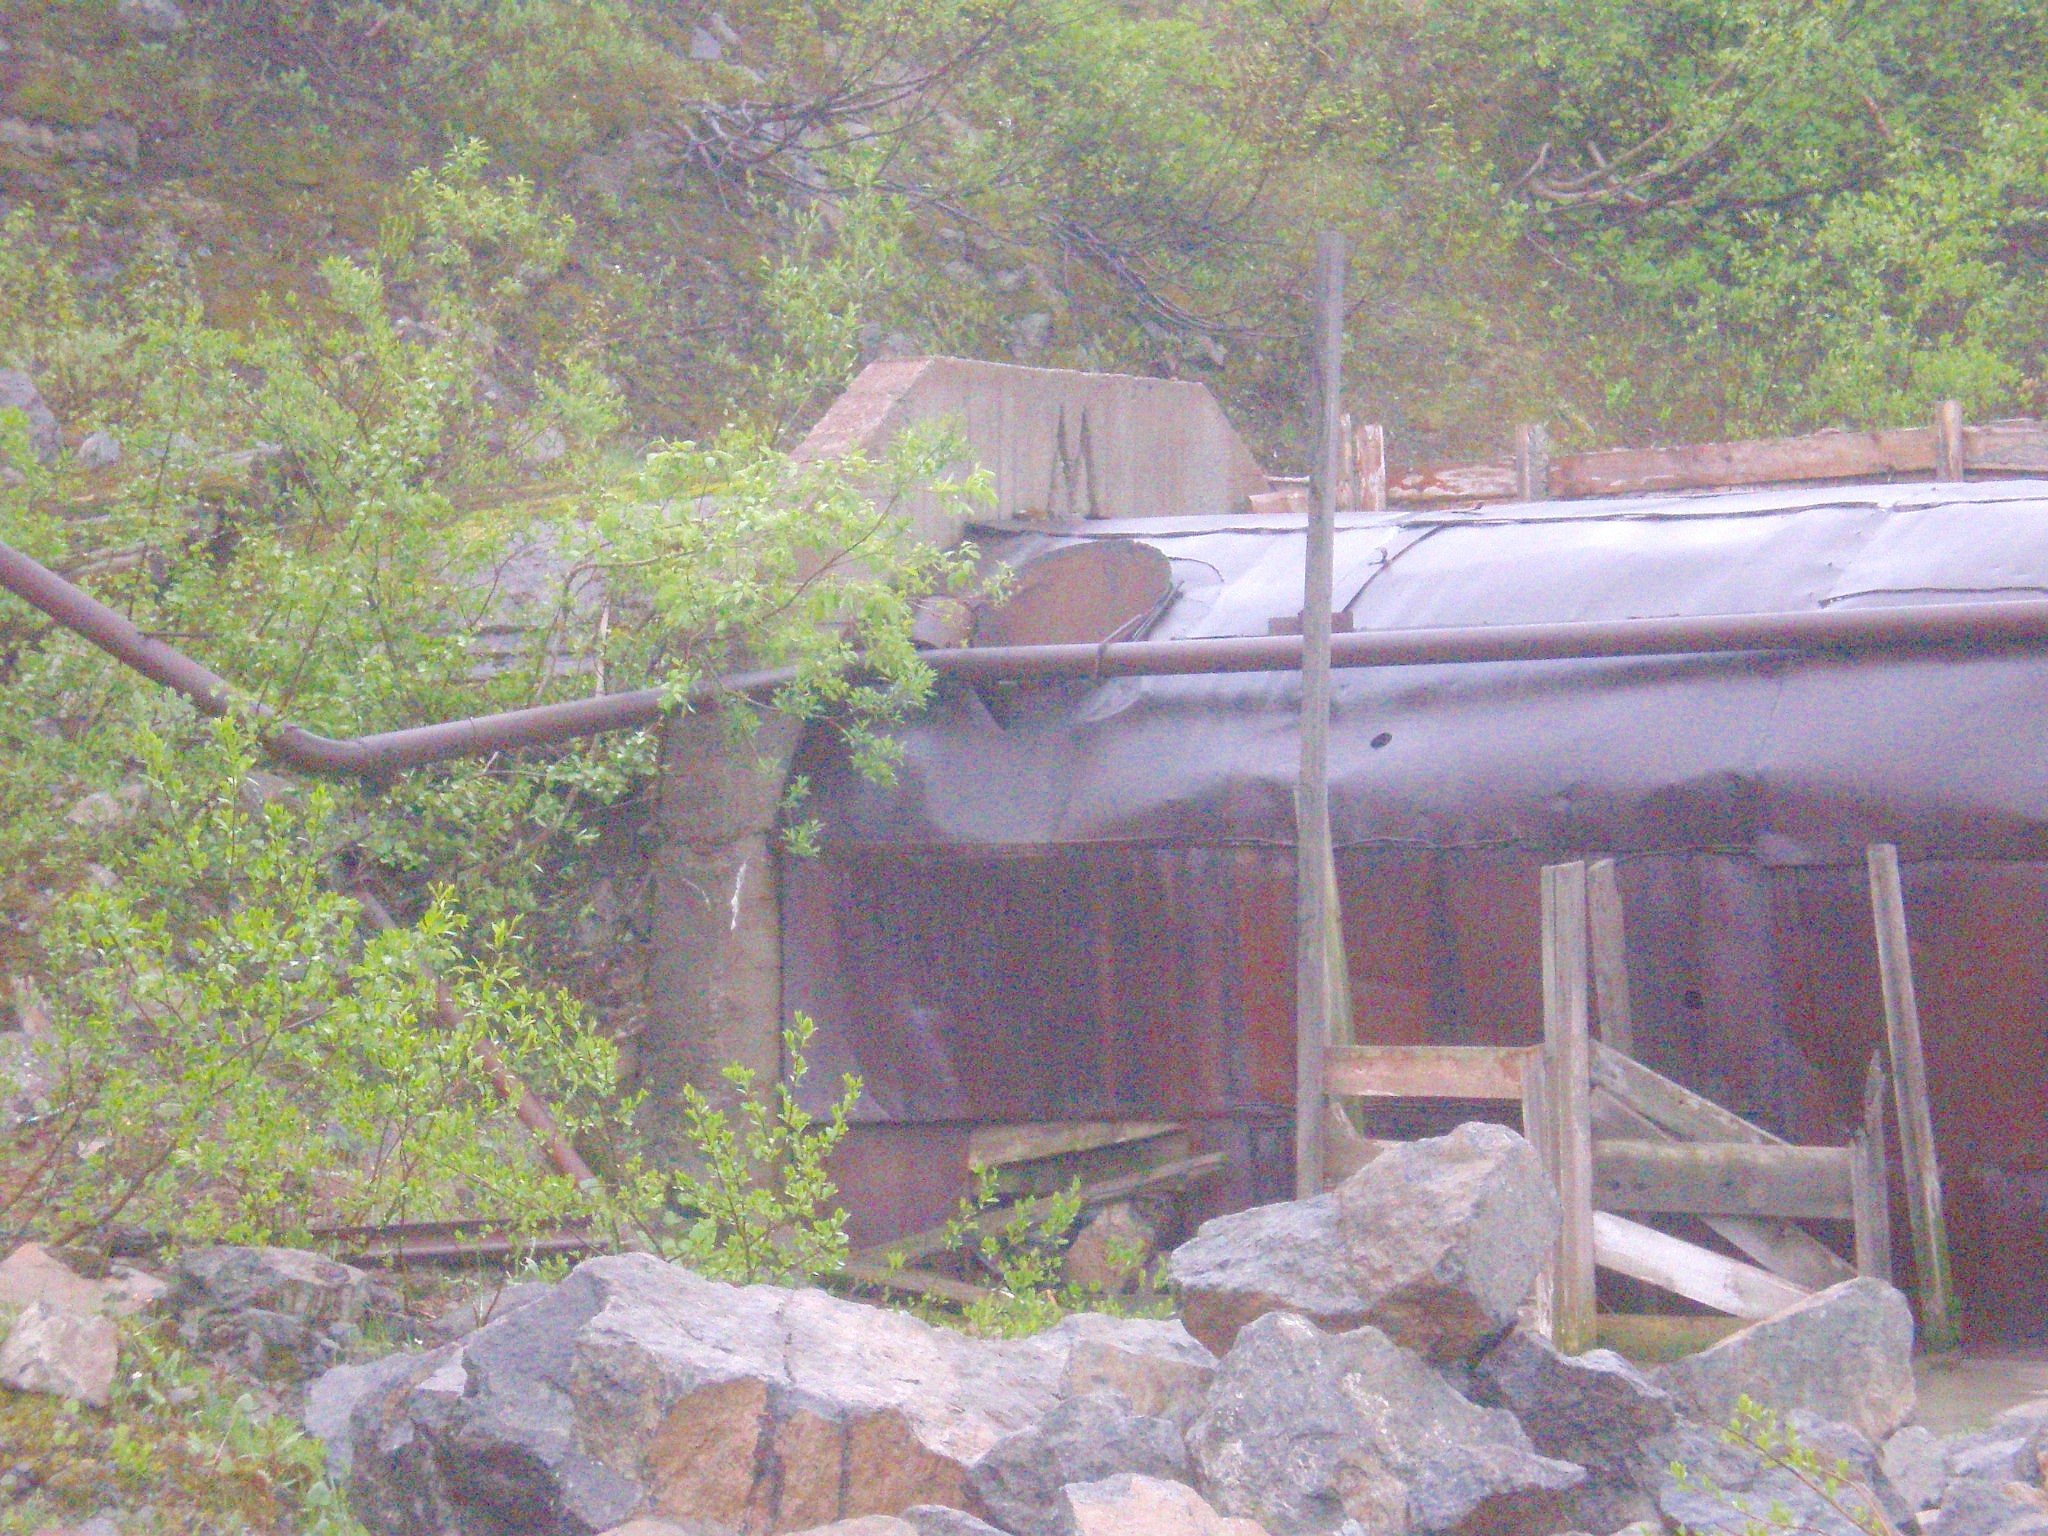 Узкоколейная железная дорога на Расвумчоррском руднике  — фотографии, сделанные в 2008 году (часть 1)